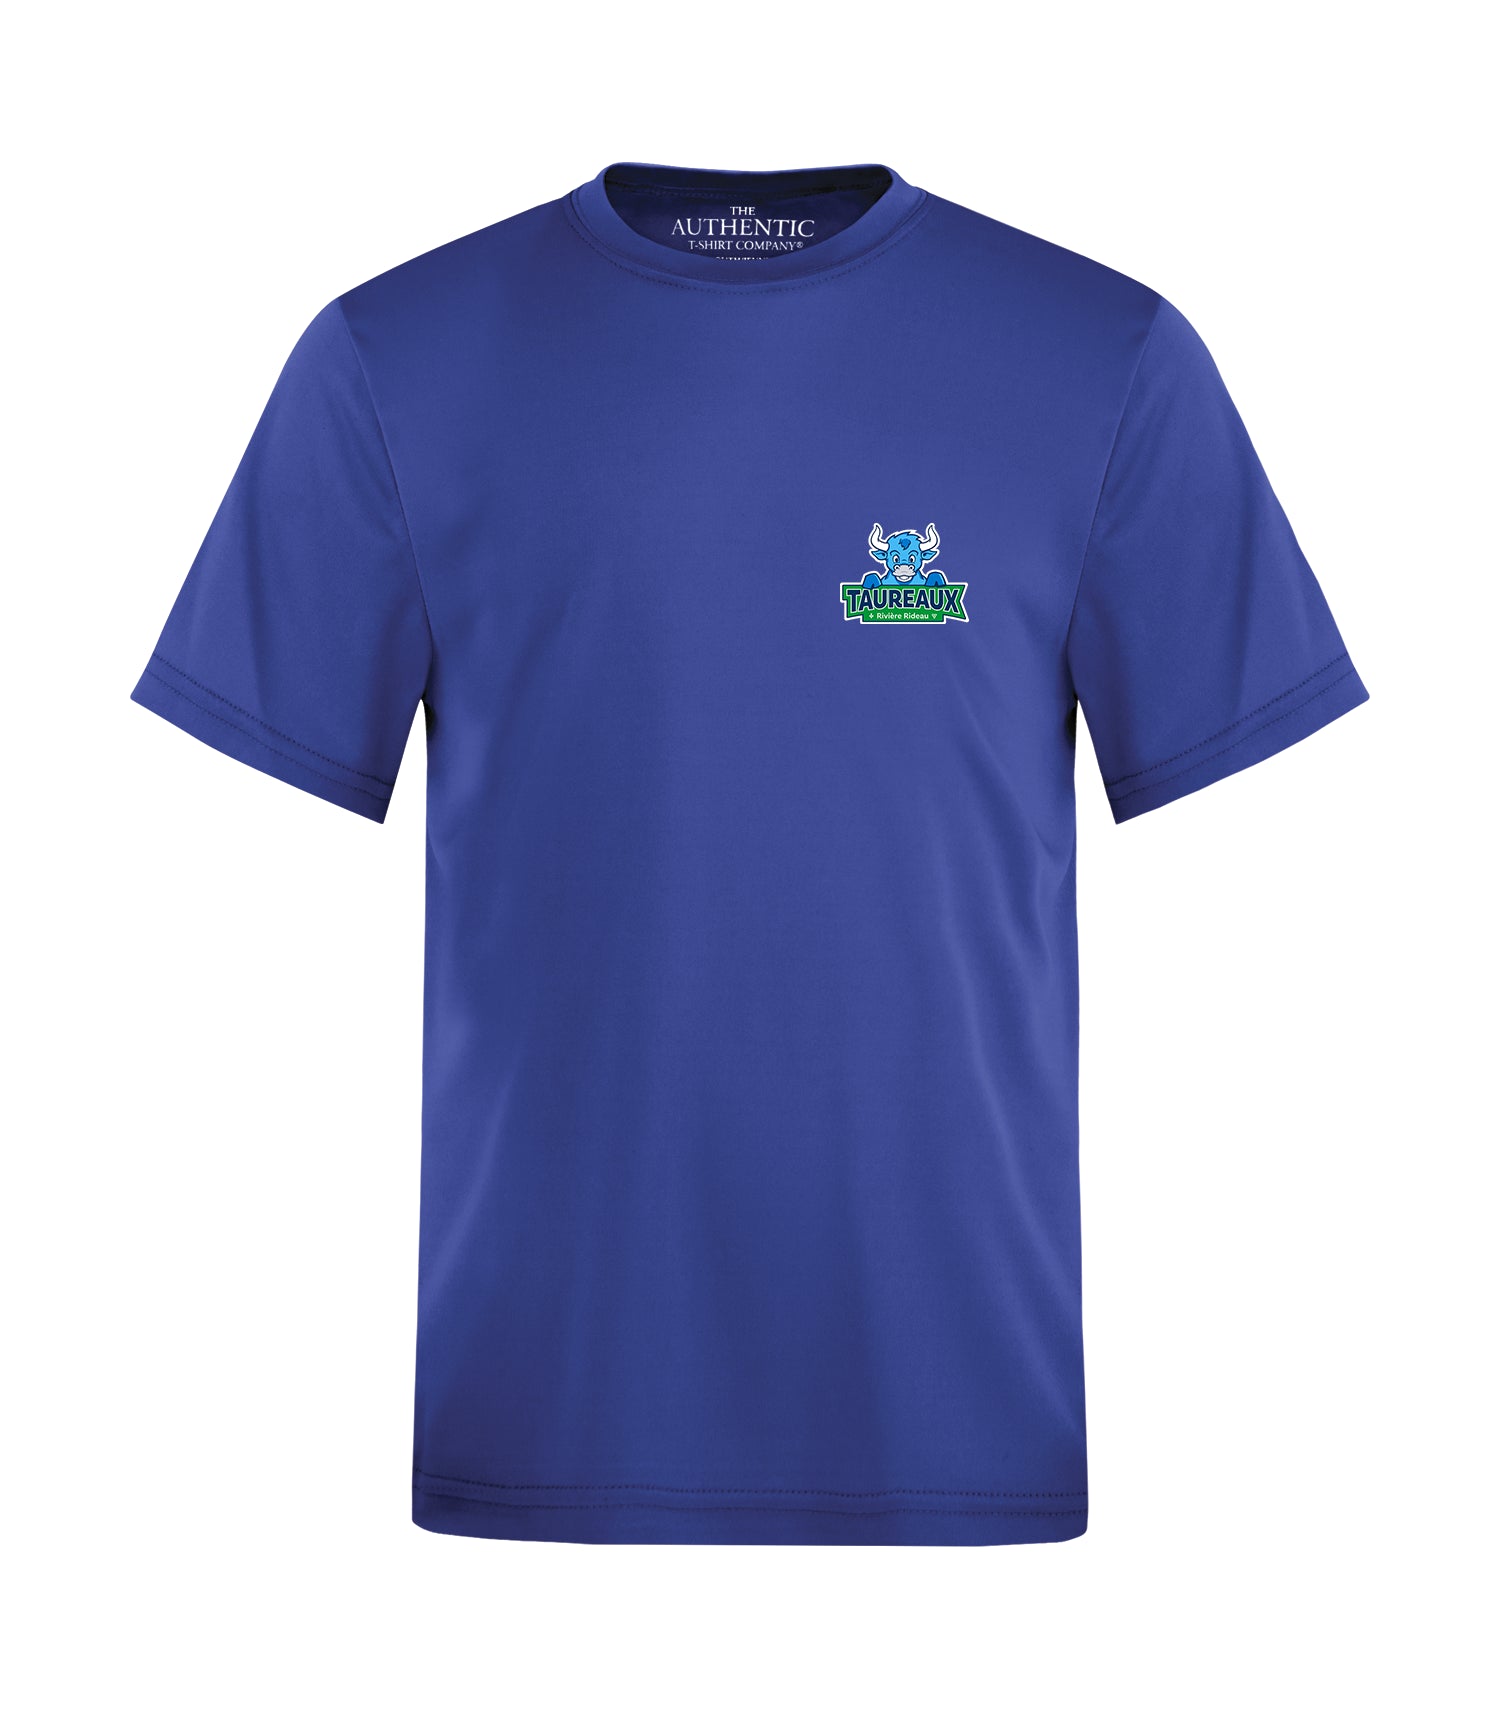 T-shirt pour jeunes à  manches courtes ATC PRO TEAM - ÉCOLE PRIMAIRE